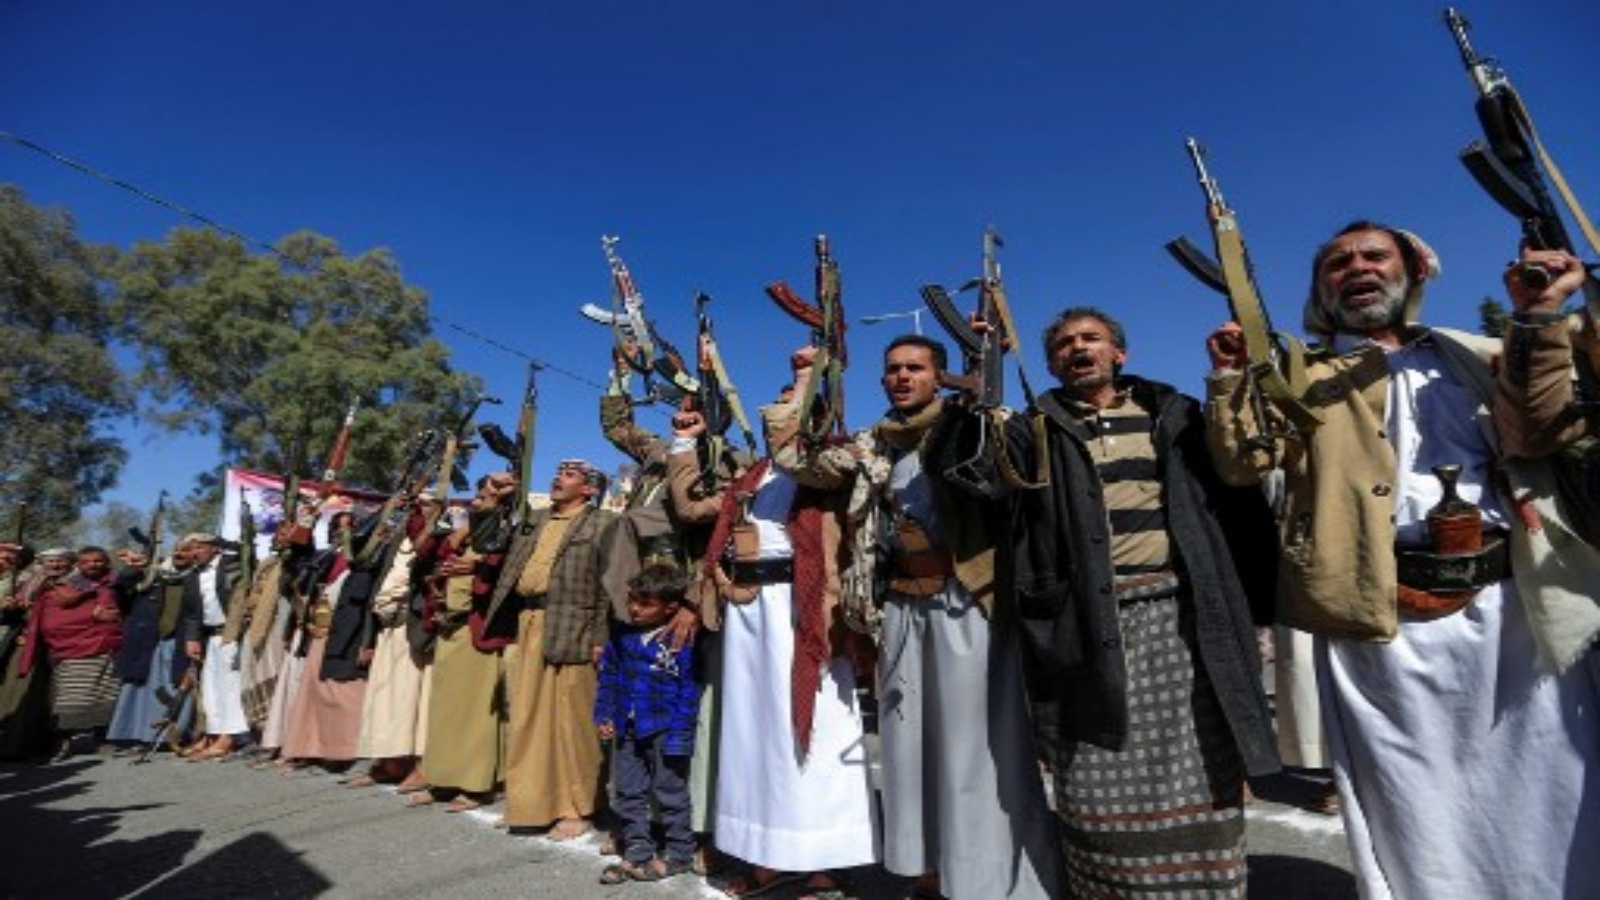 أنصار حركة الحوثيين في اليمن يرفعون الأسلحة النارية وهم يهتفون بشعارات خلال مظاهرة أمام السفارة الأمريكية المغلقة في العاصمة صنعاء في 18 يناير 2021 ، رفضًا لقرار الإدارة الأمريكية المنتهية ولايتها تصنيف الحوثيين 